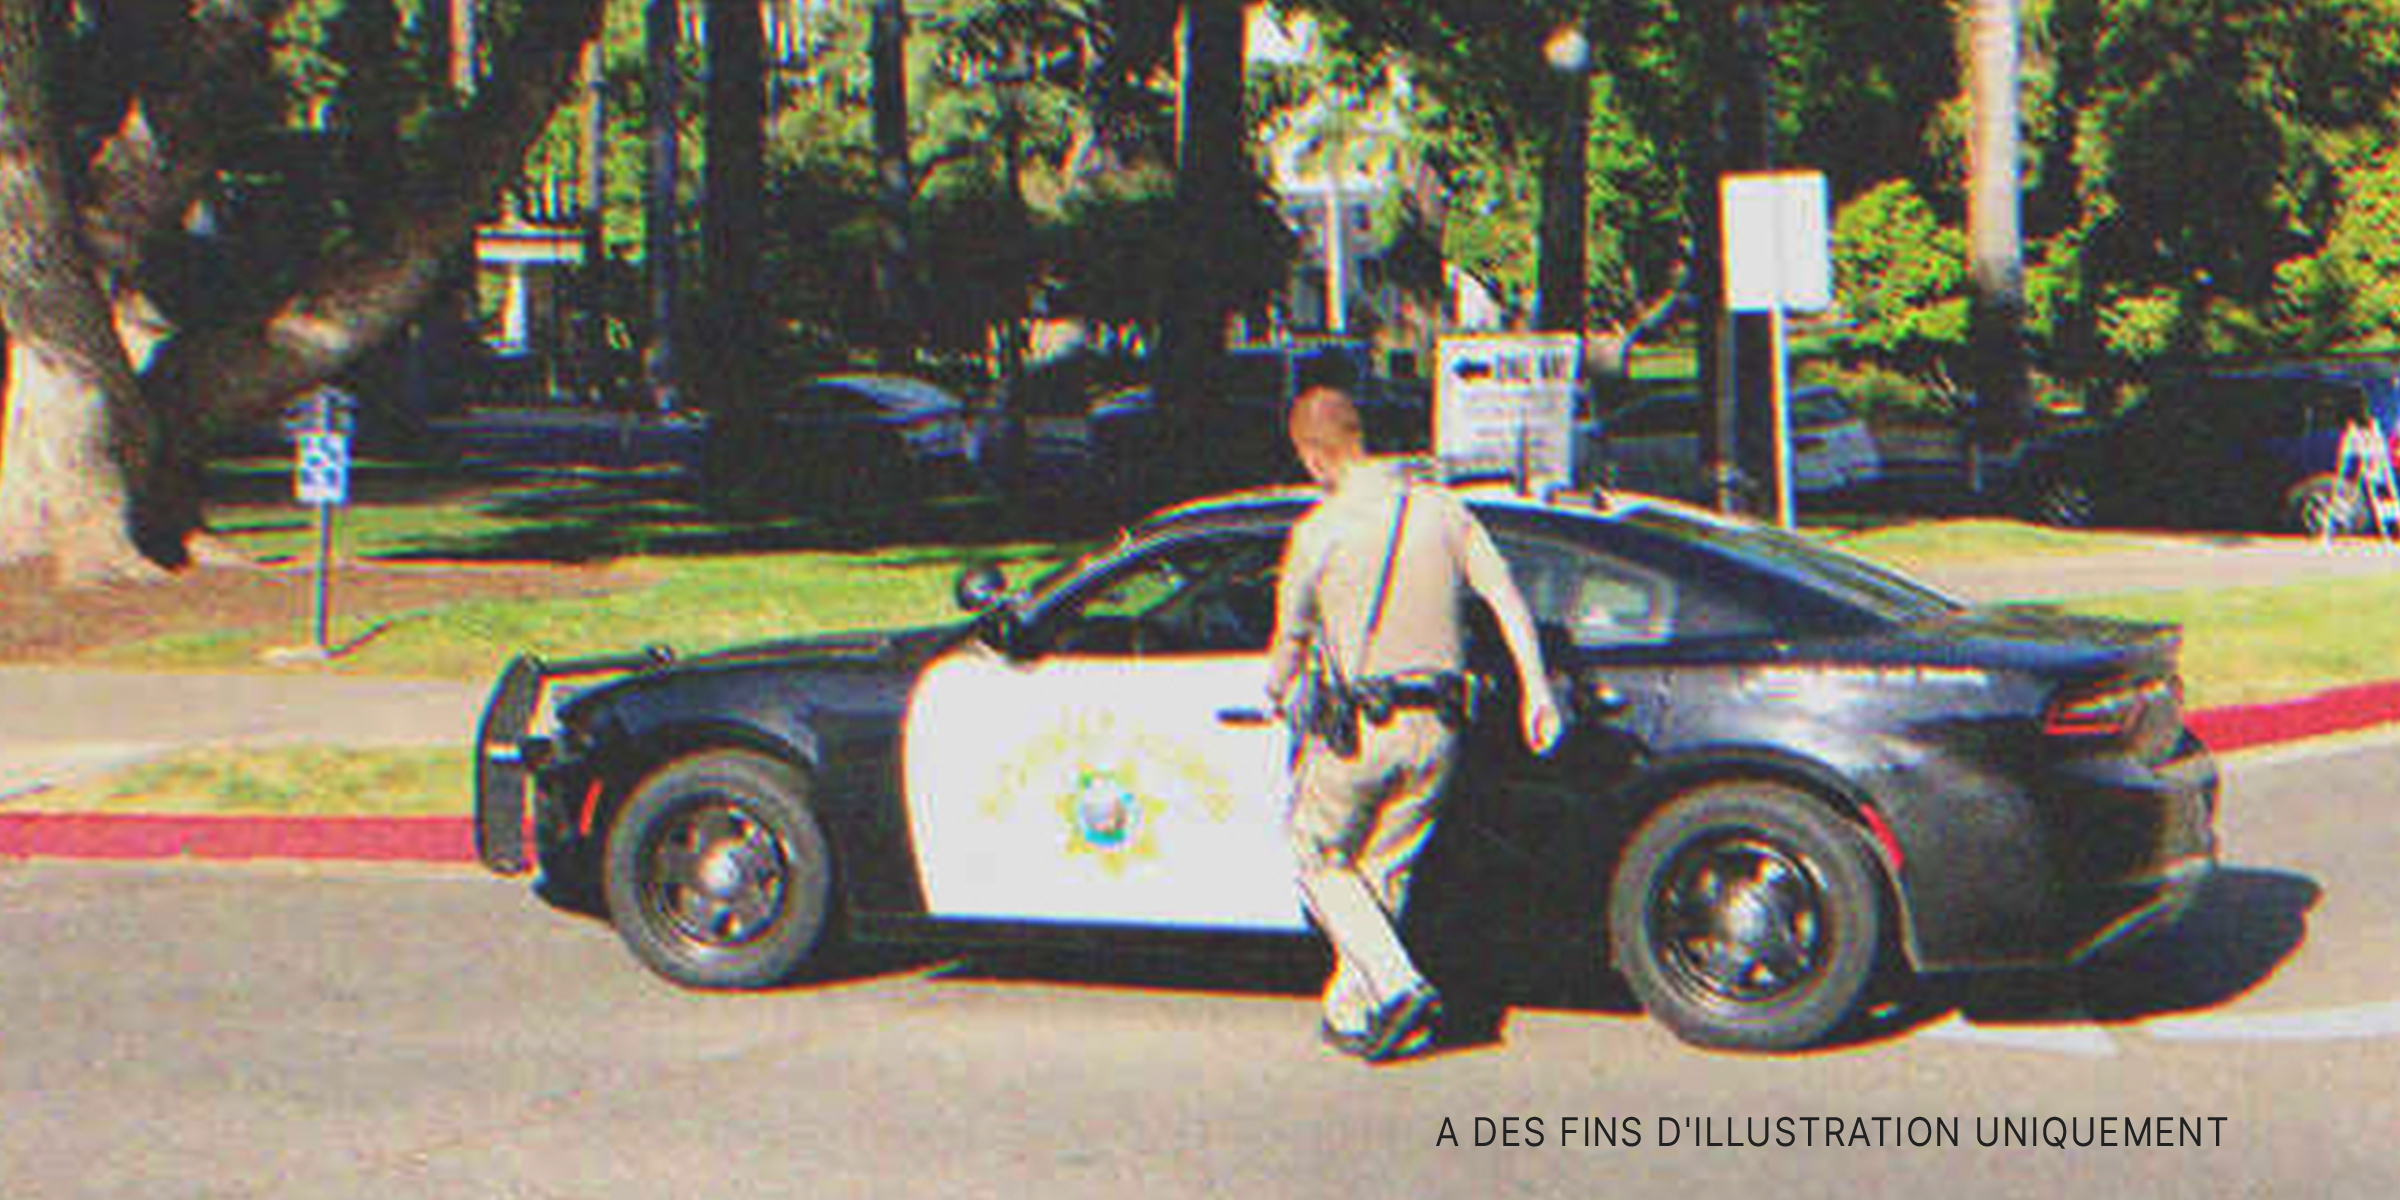 Un policier entrant dans son véhicule de service | Source : Shutterstock.com